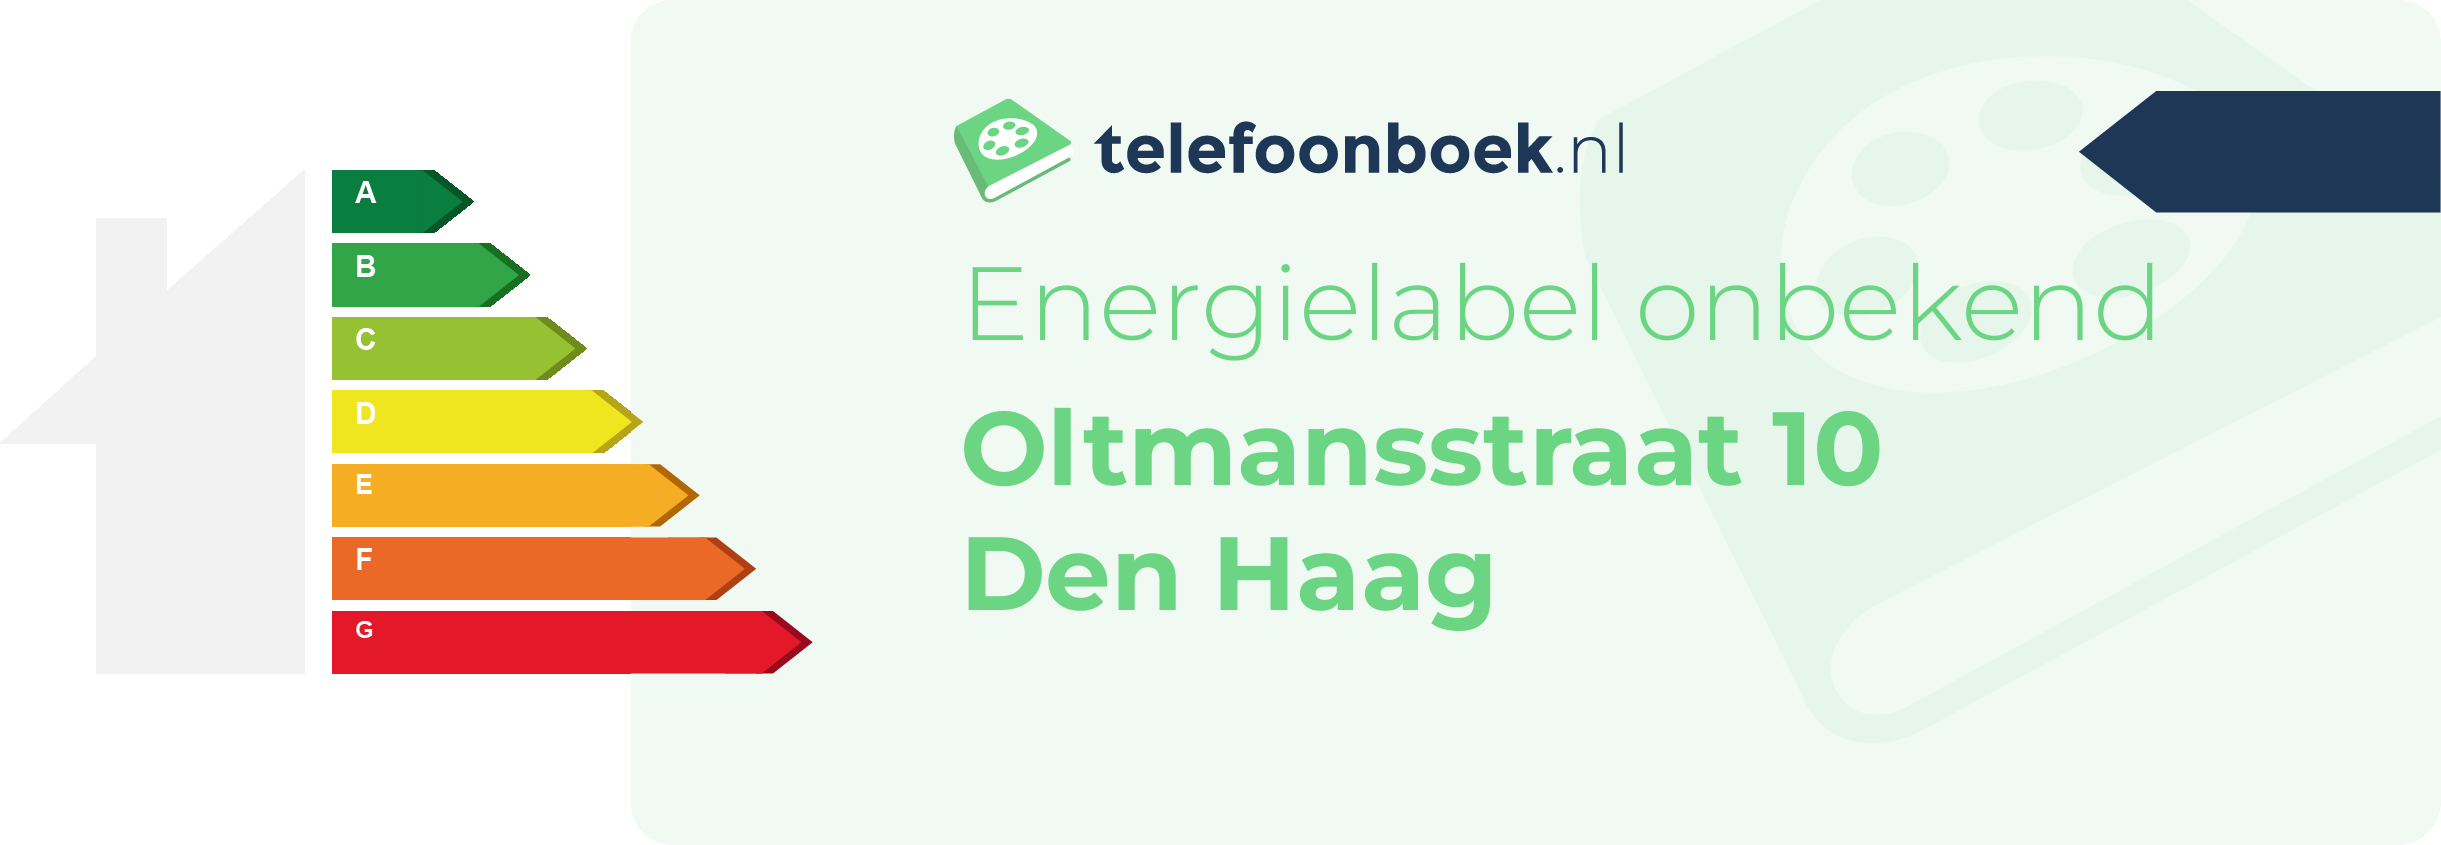 Energielabel Oltmansstraat 10 Den Haag